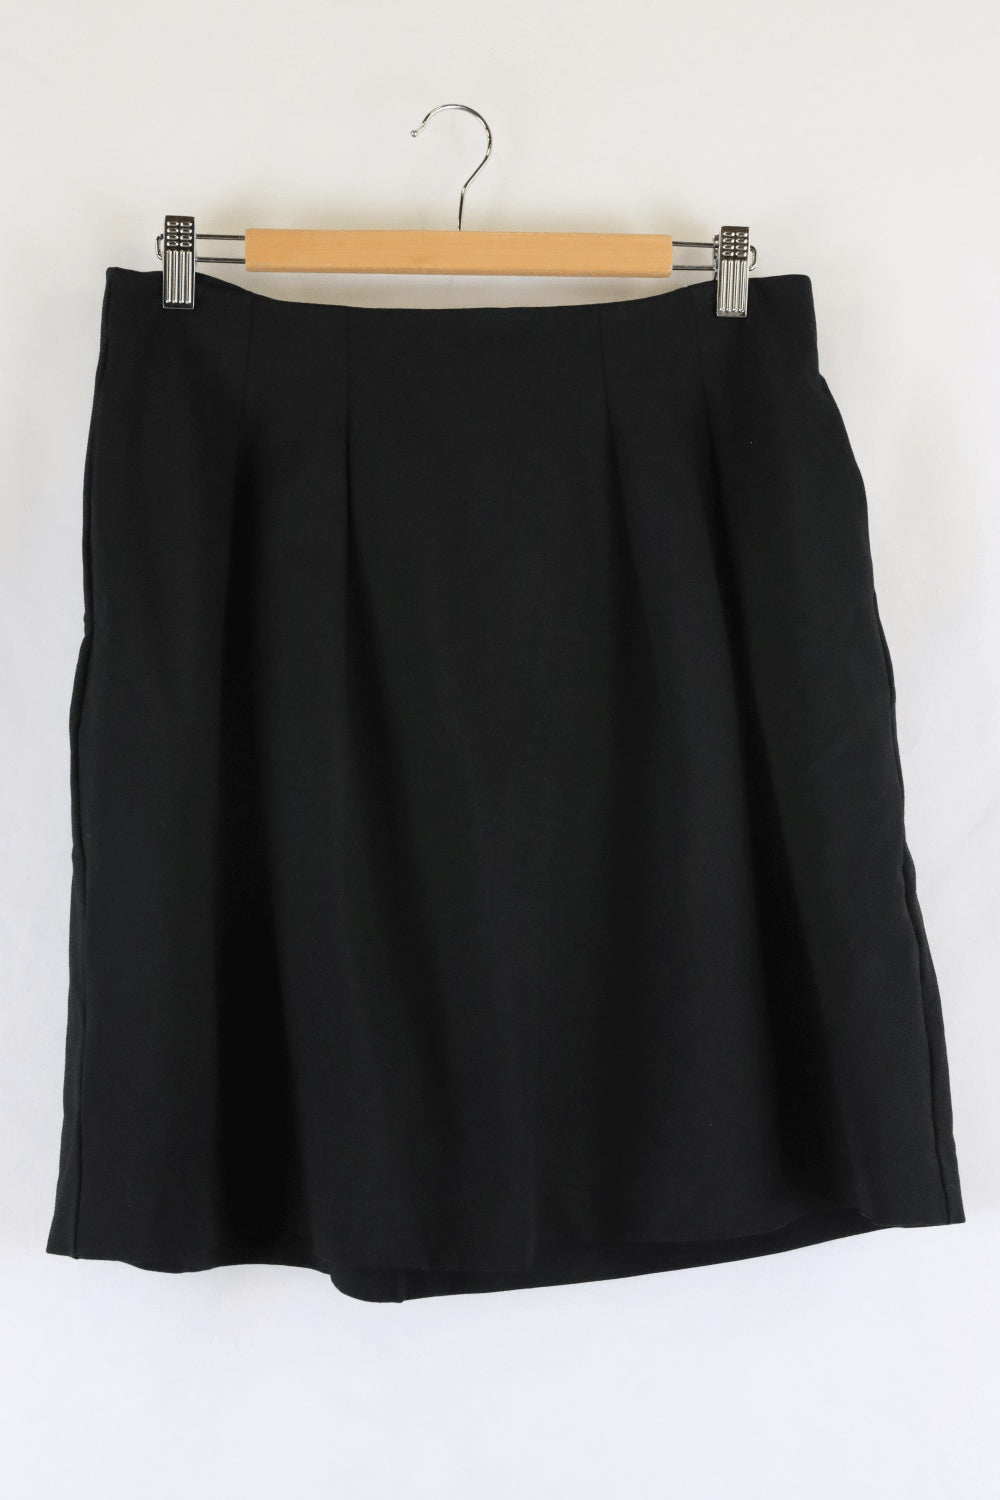 Jigsaw Black Skirt S